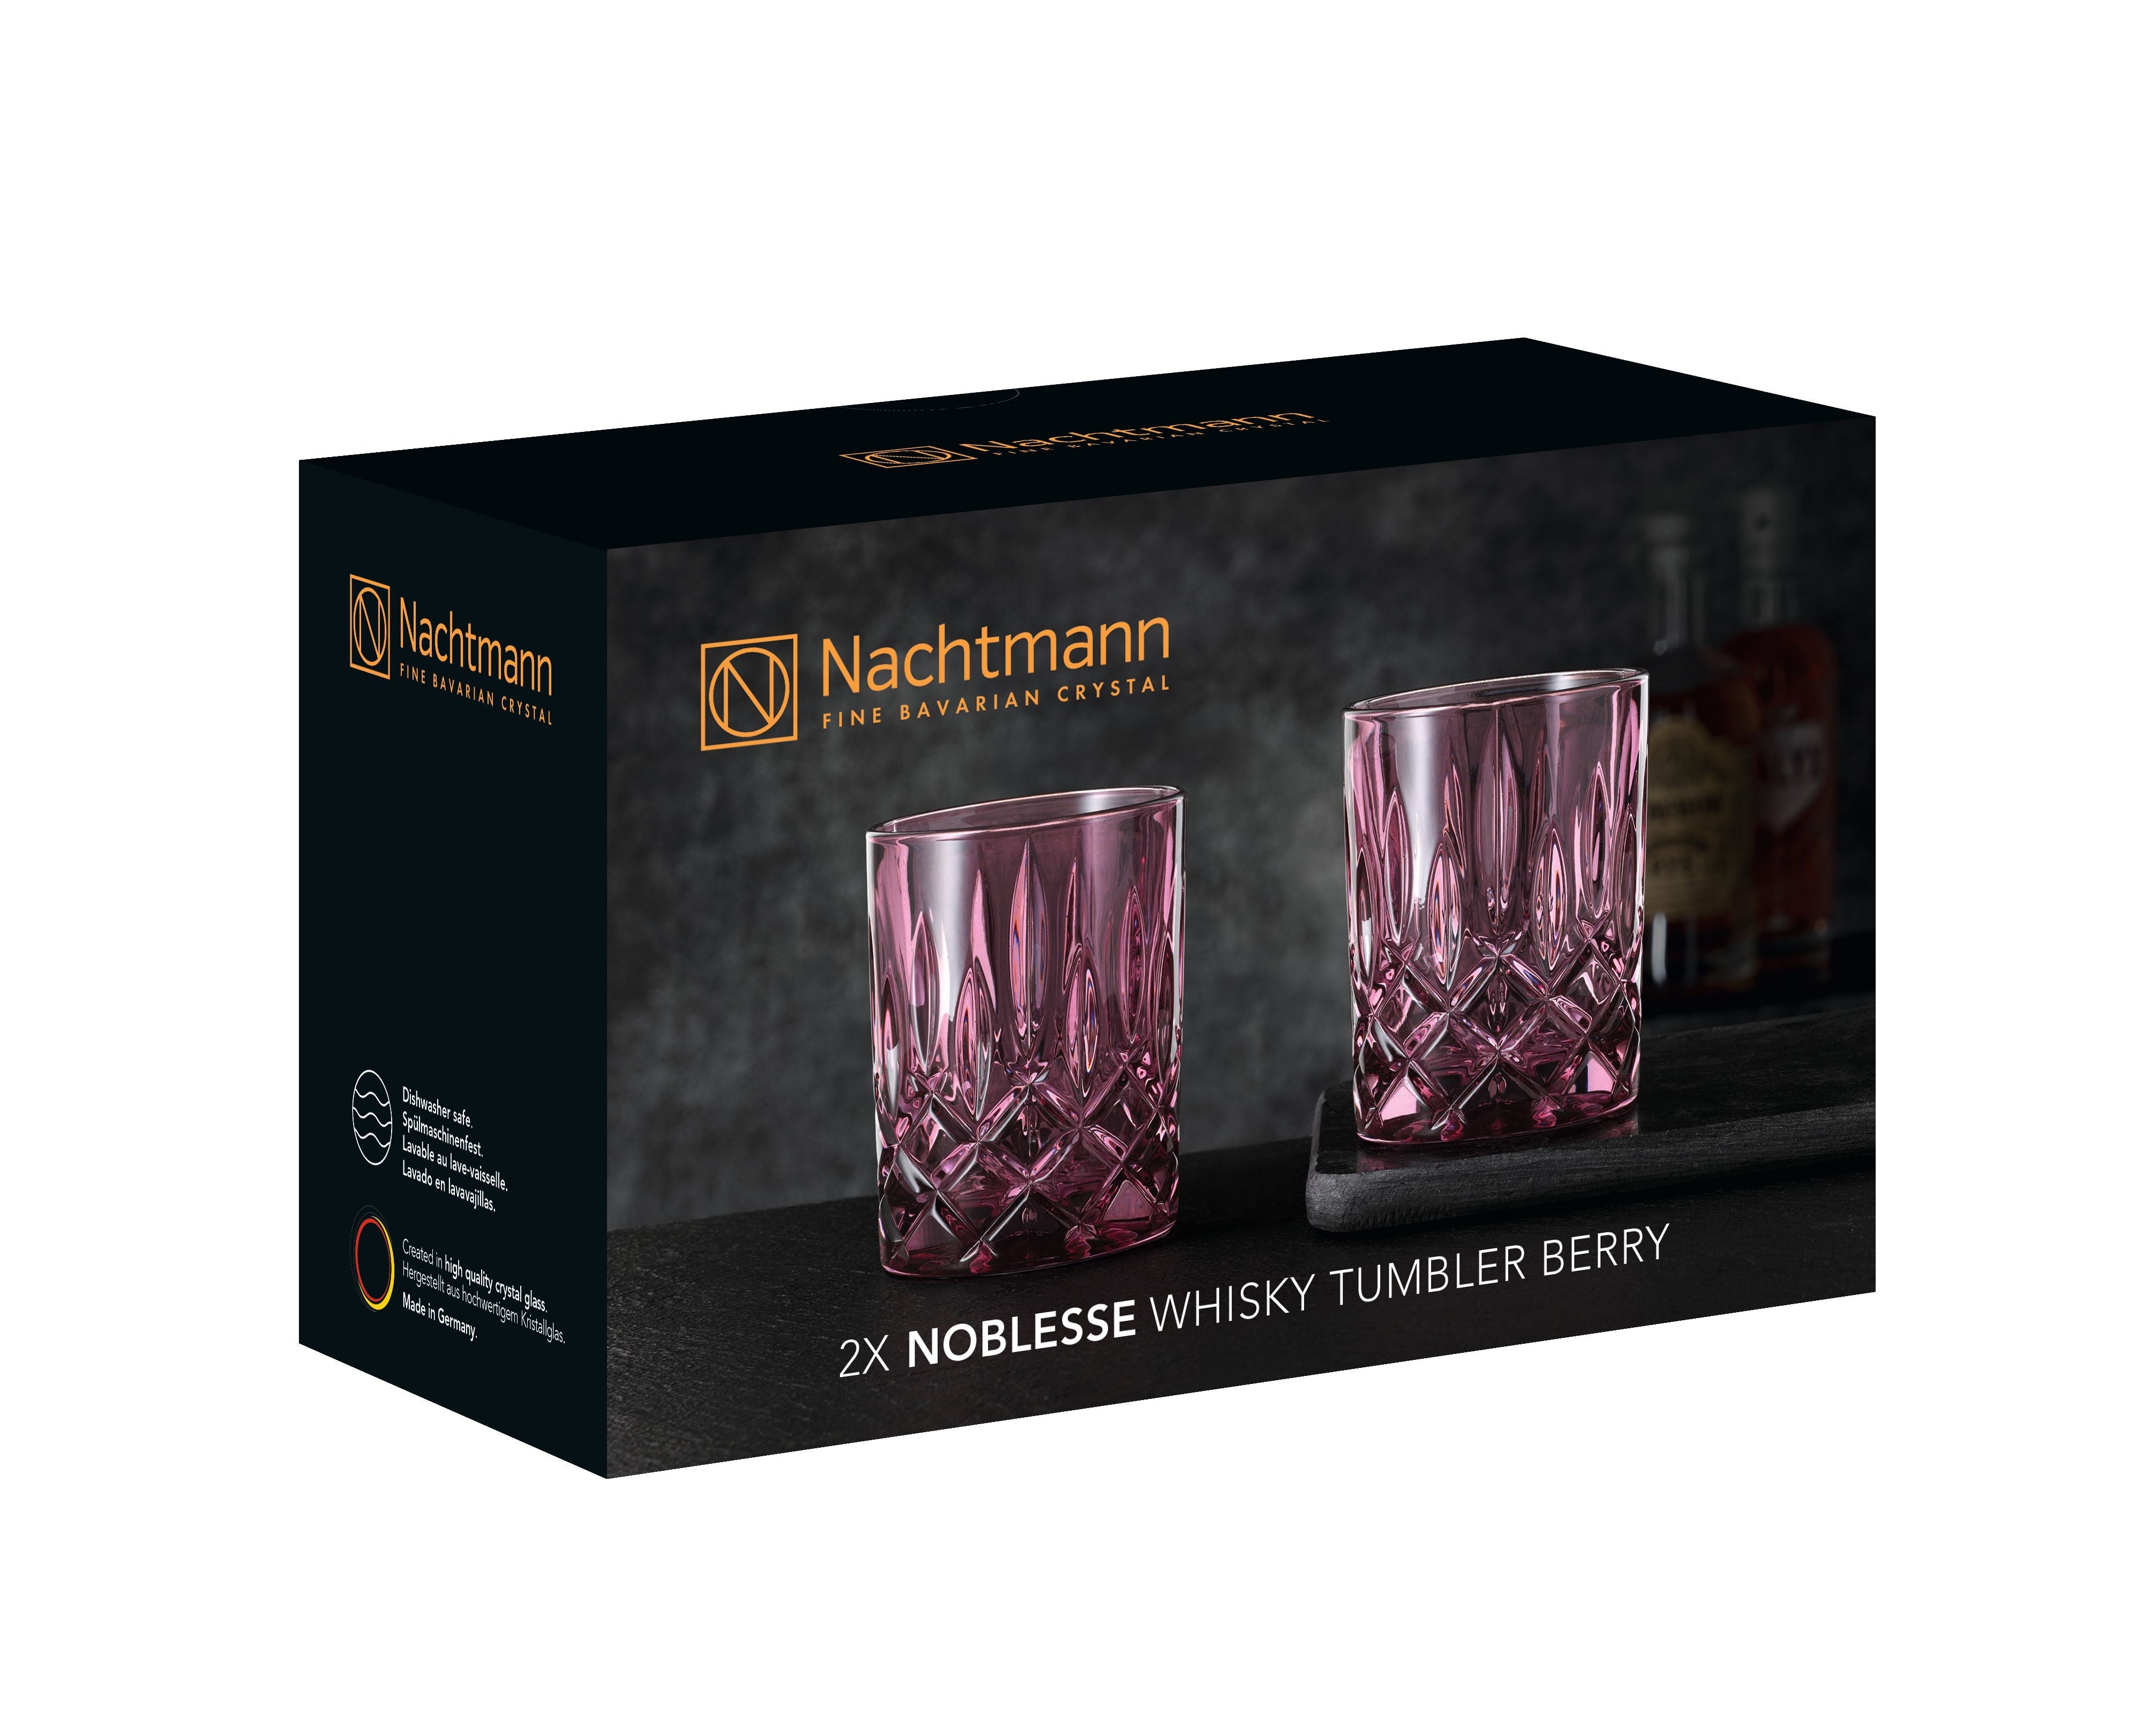 Nachtmann Aatelistuva viski lasi marja 295 ml, sarja 2